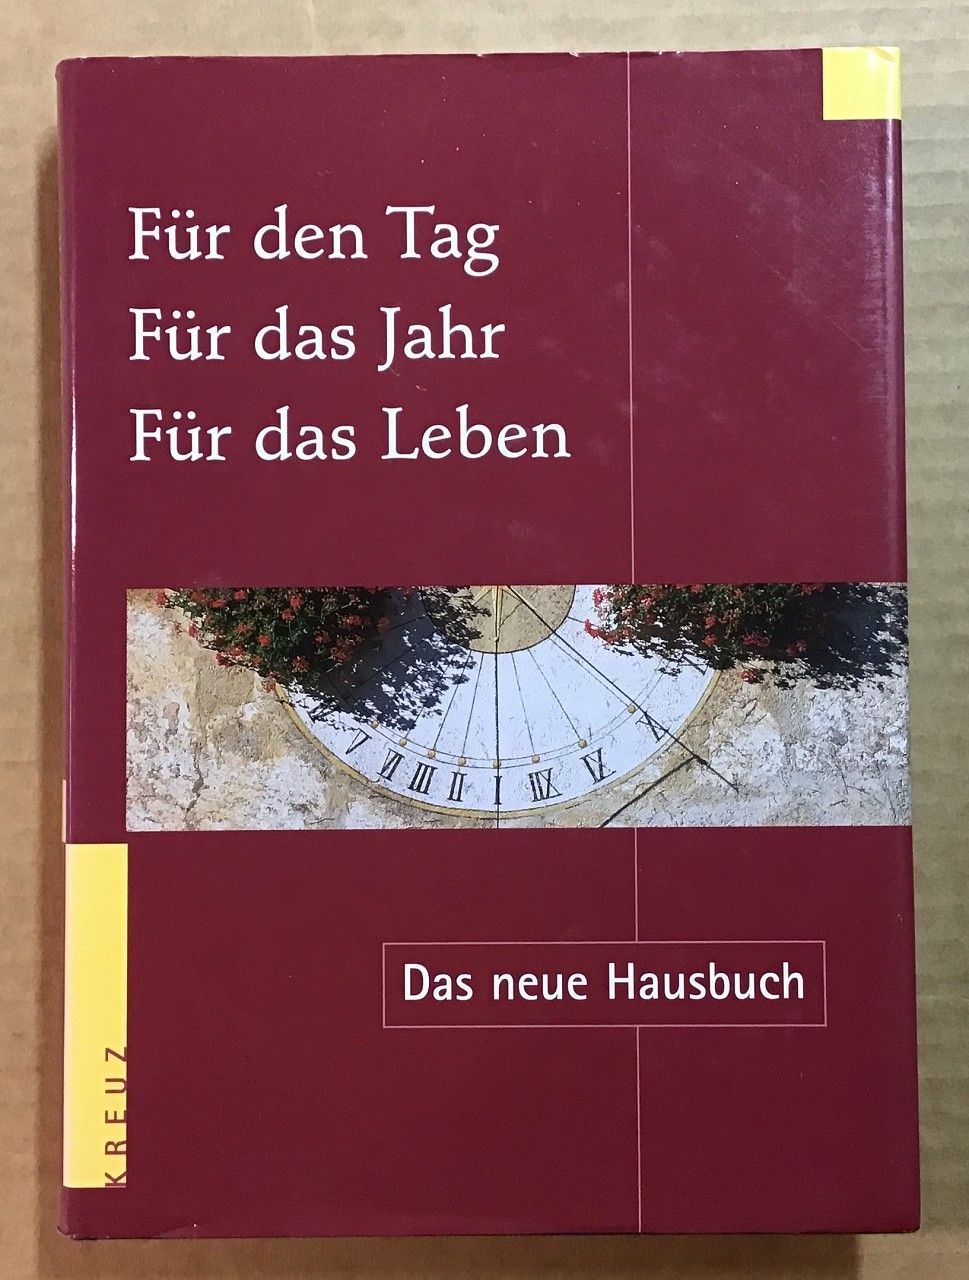 Für den Tag, für das Jahr, für das Leben : Das neue Hausbuch. - Frisch, Hermann-Josef (Herausgeber)